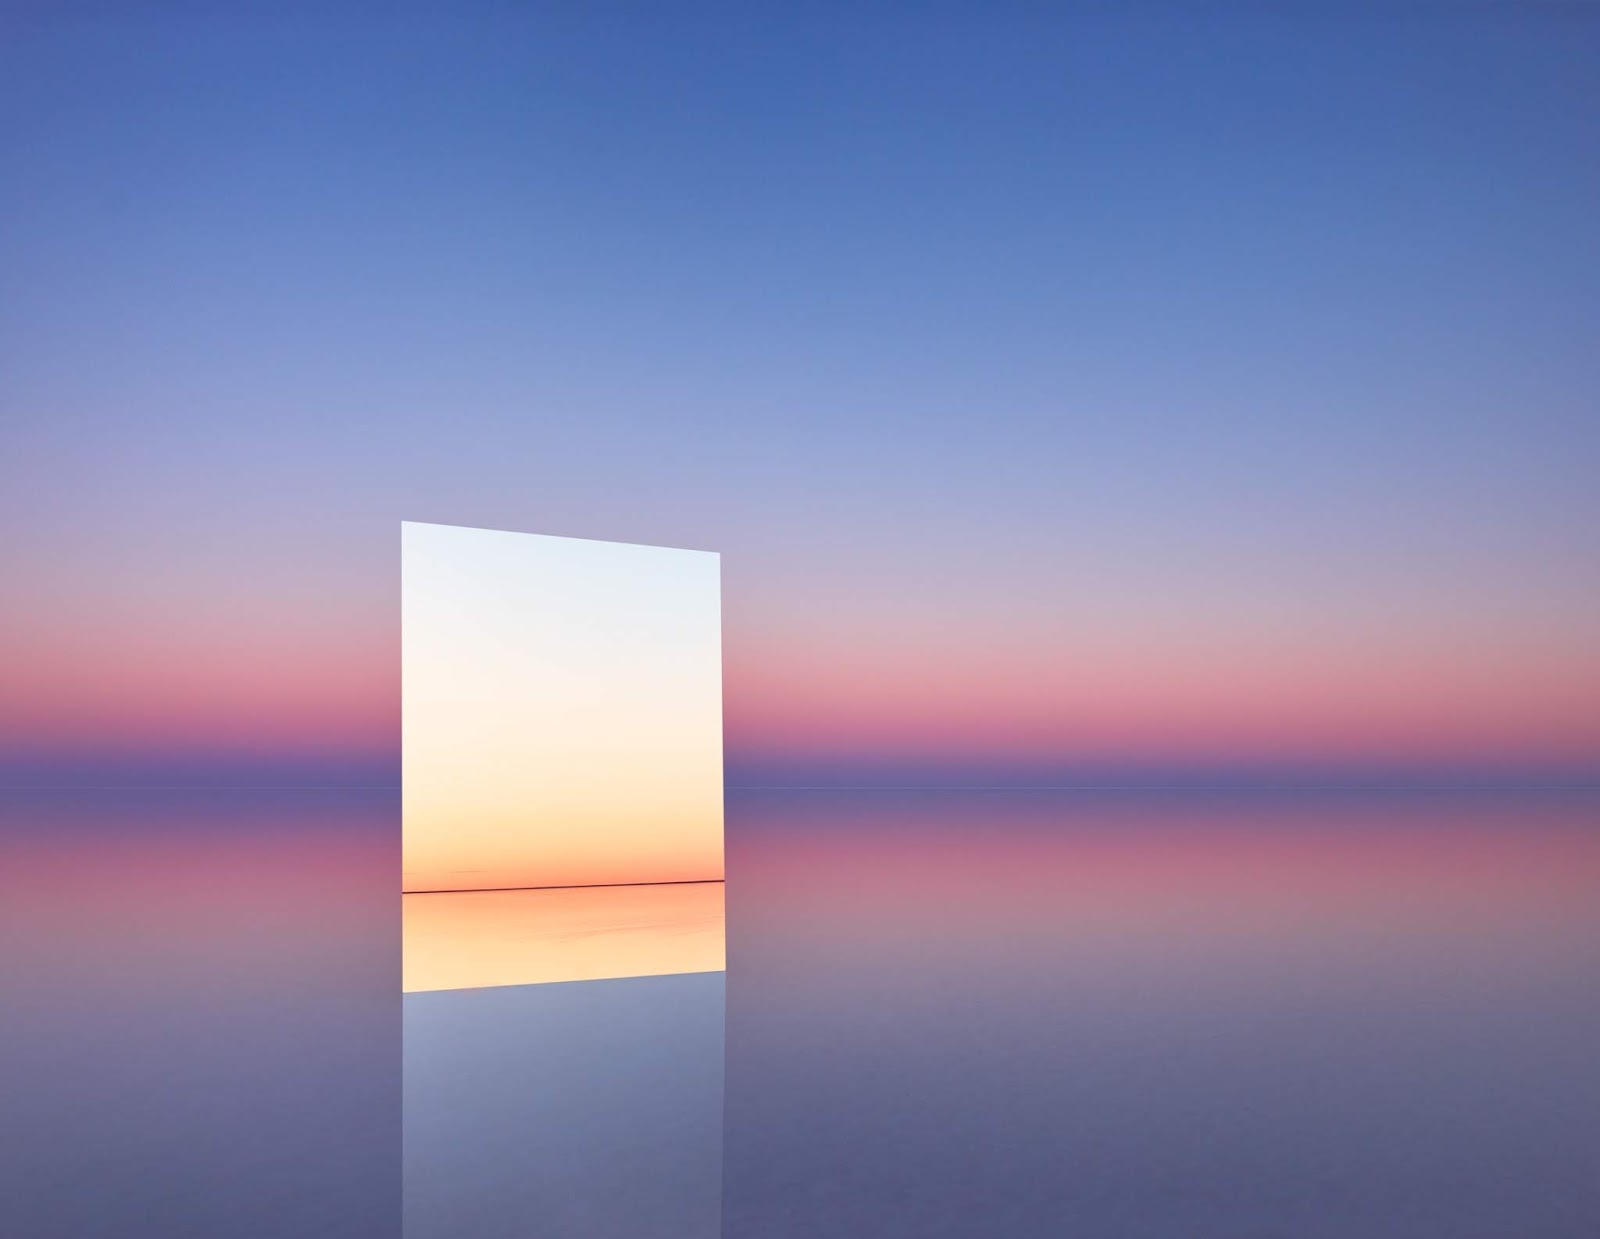 塩湖の中に鏡を置くと不思議で幻想的な光景が出来上がった 7枚 A ミライノシテン